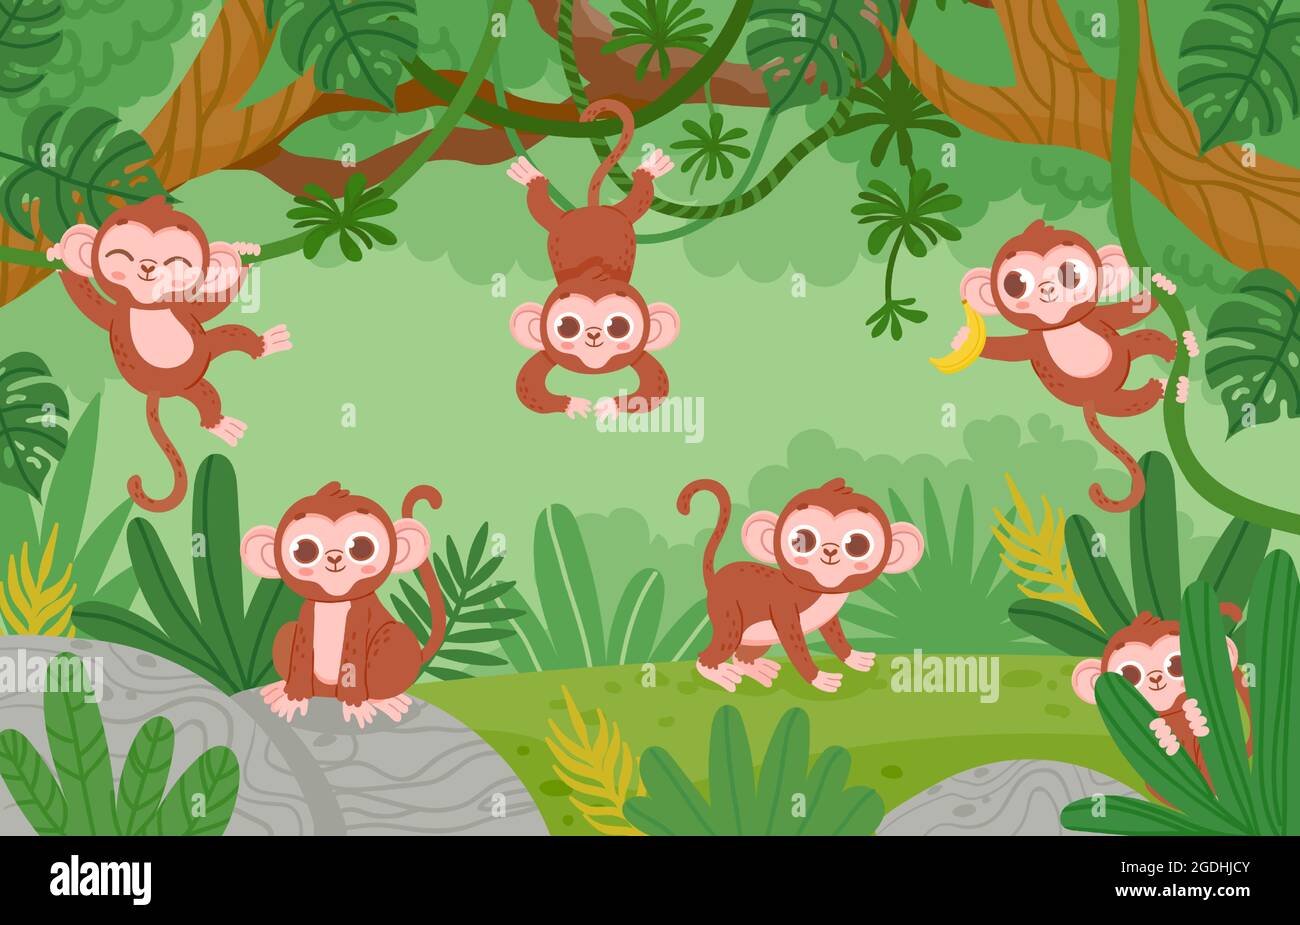 Des singes mignons accrochés à des arbres de lianes dans la forêt de jungle. Bande dessinée les personnages de singe heureux jouent et sautent. Paysage vectoriel de zoo tropical puérile Illustration de Vecteur